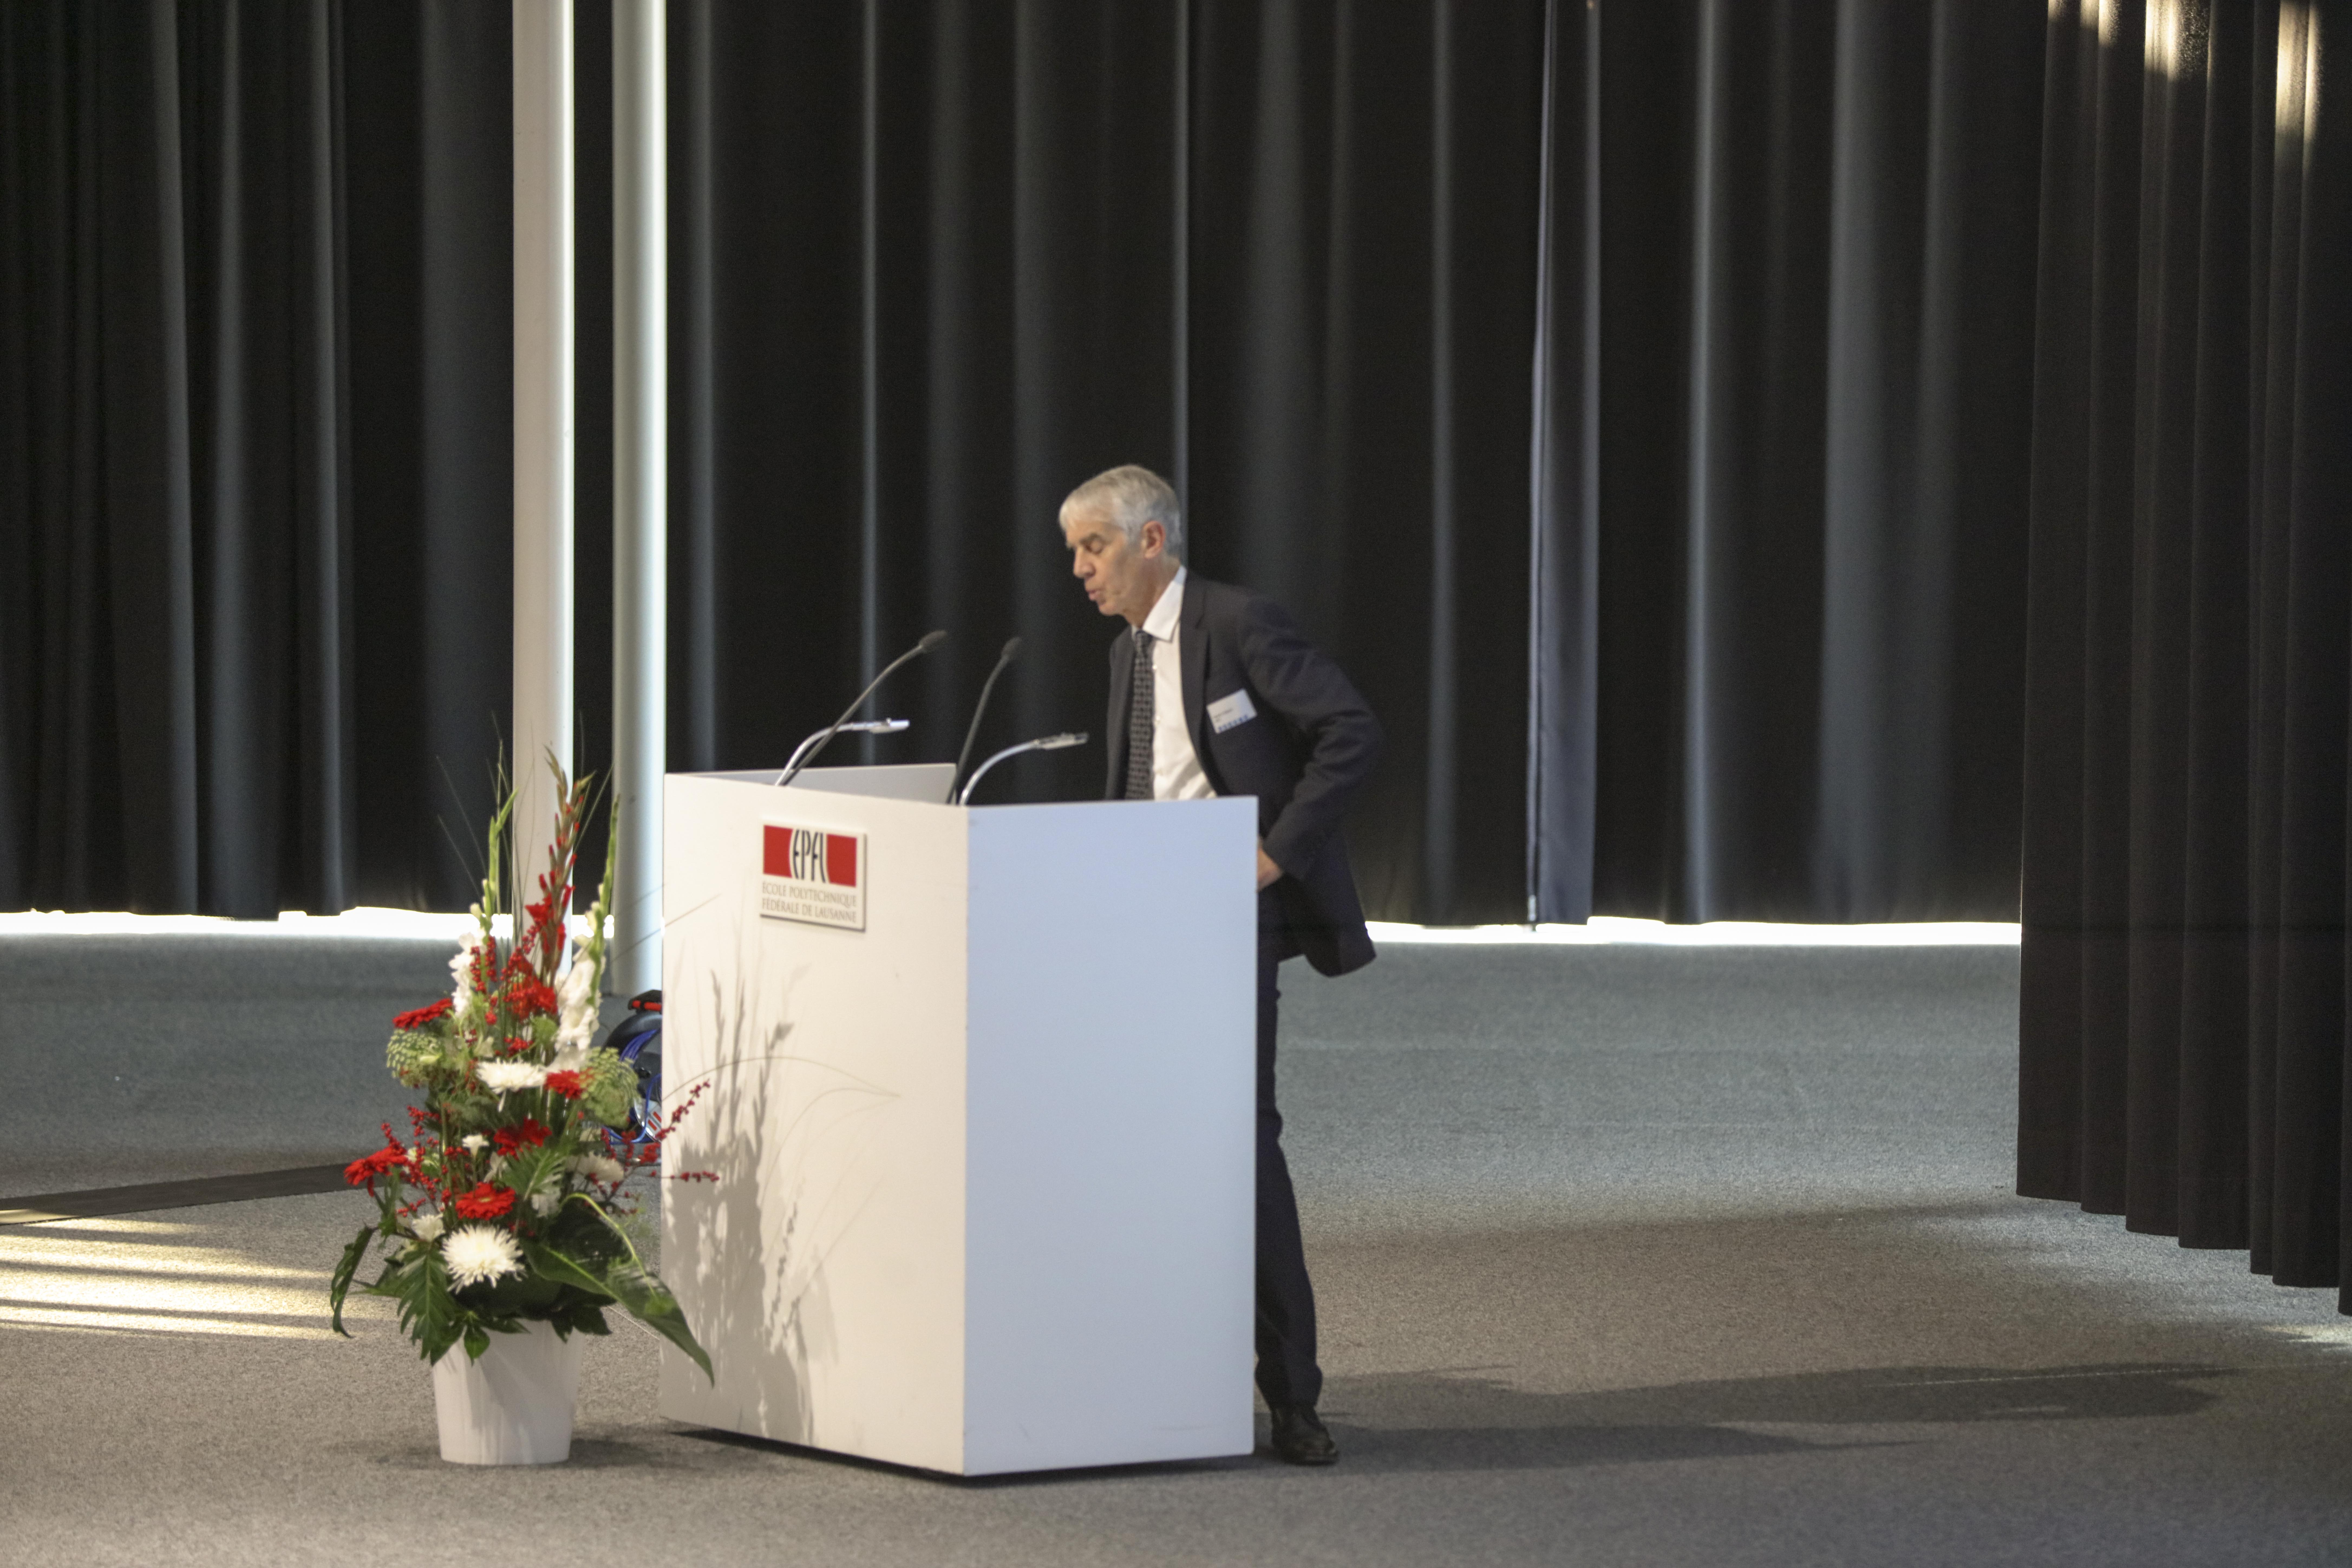 Accueil par Professeur Martin Vetterli, président de l’EPFL